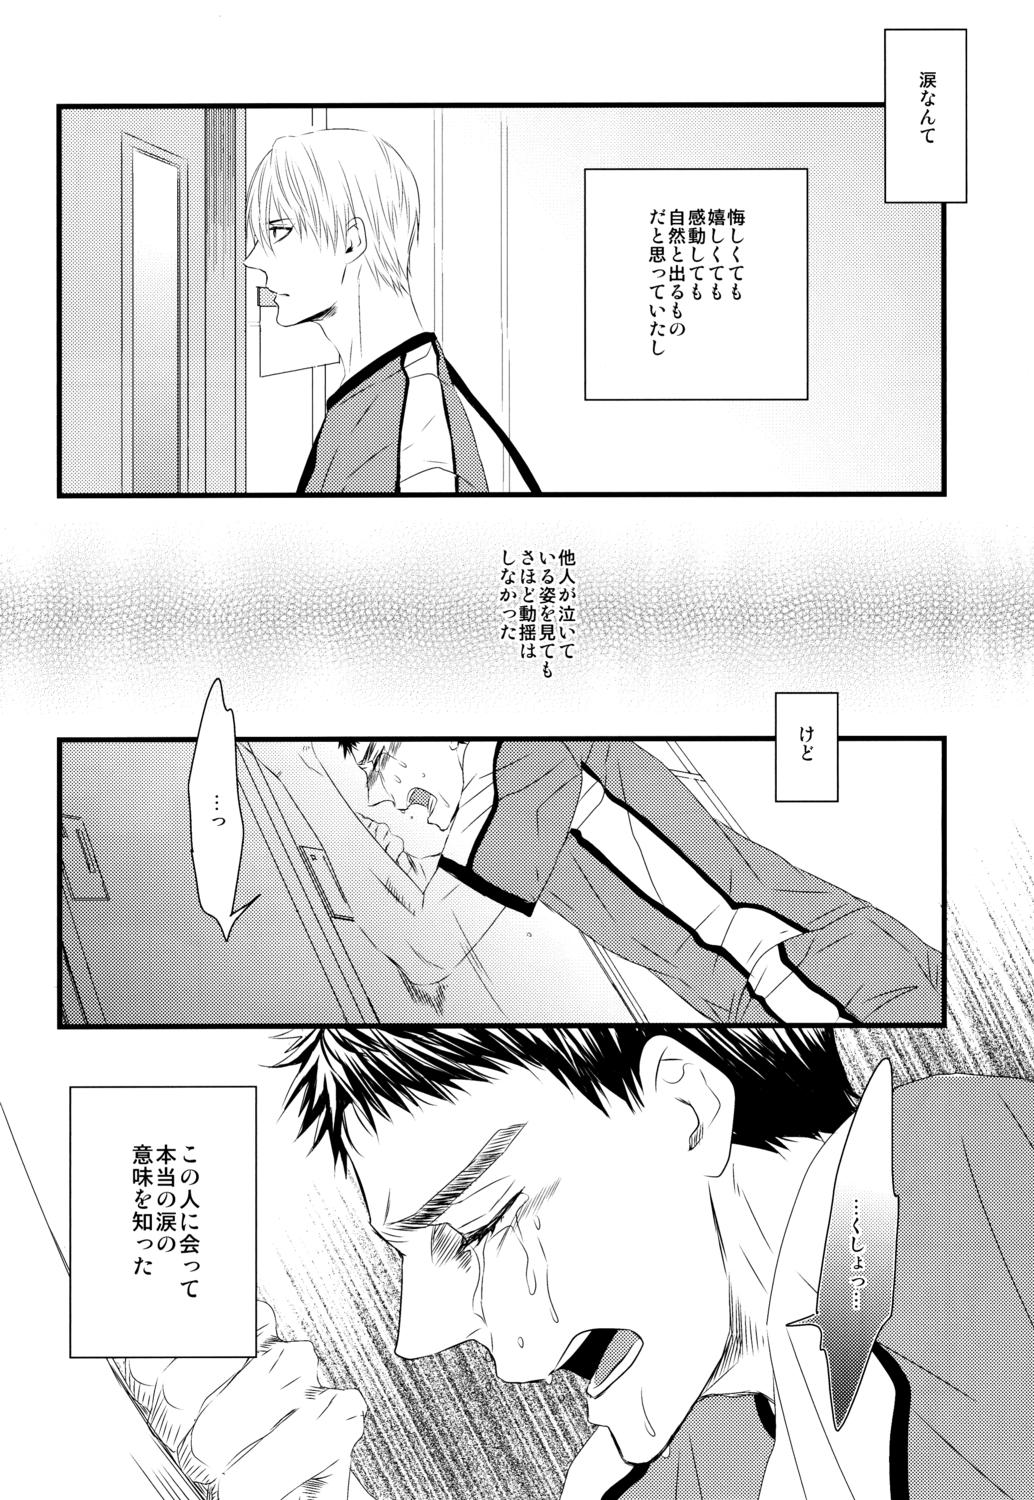 Gayfuck Soshite Boku wa Kirei no Imi o Shiru - Kuroko no basuke Facefuck - Page 7